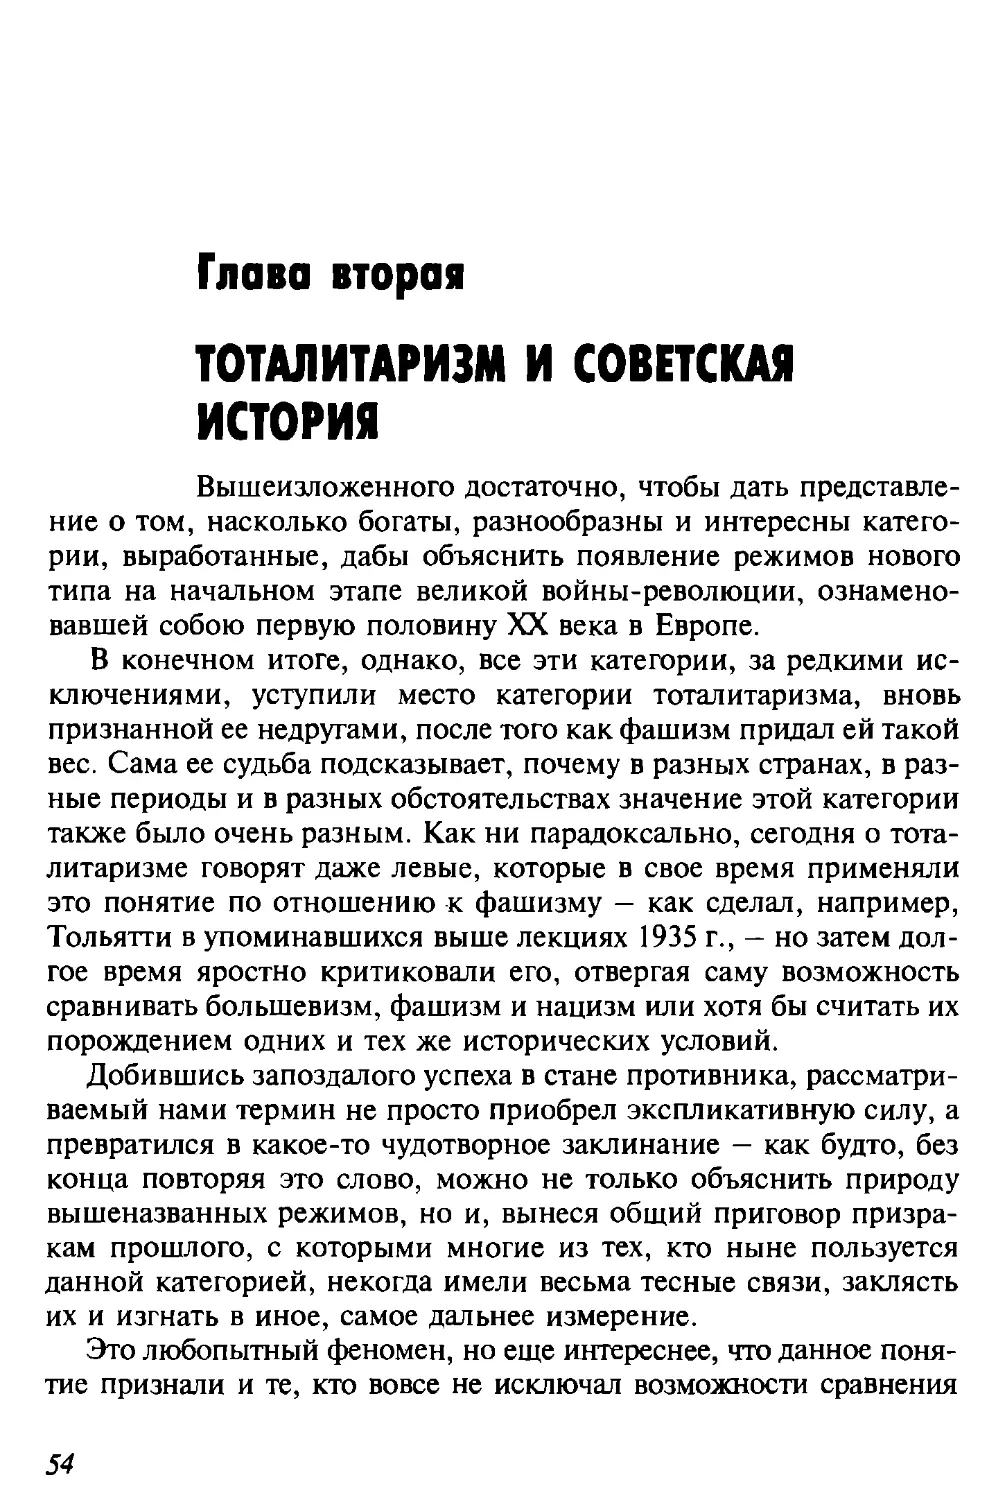 Глава вторая. Тоталитаризм и советская история